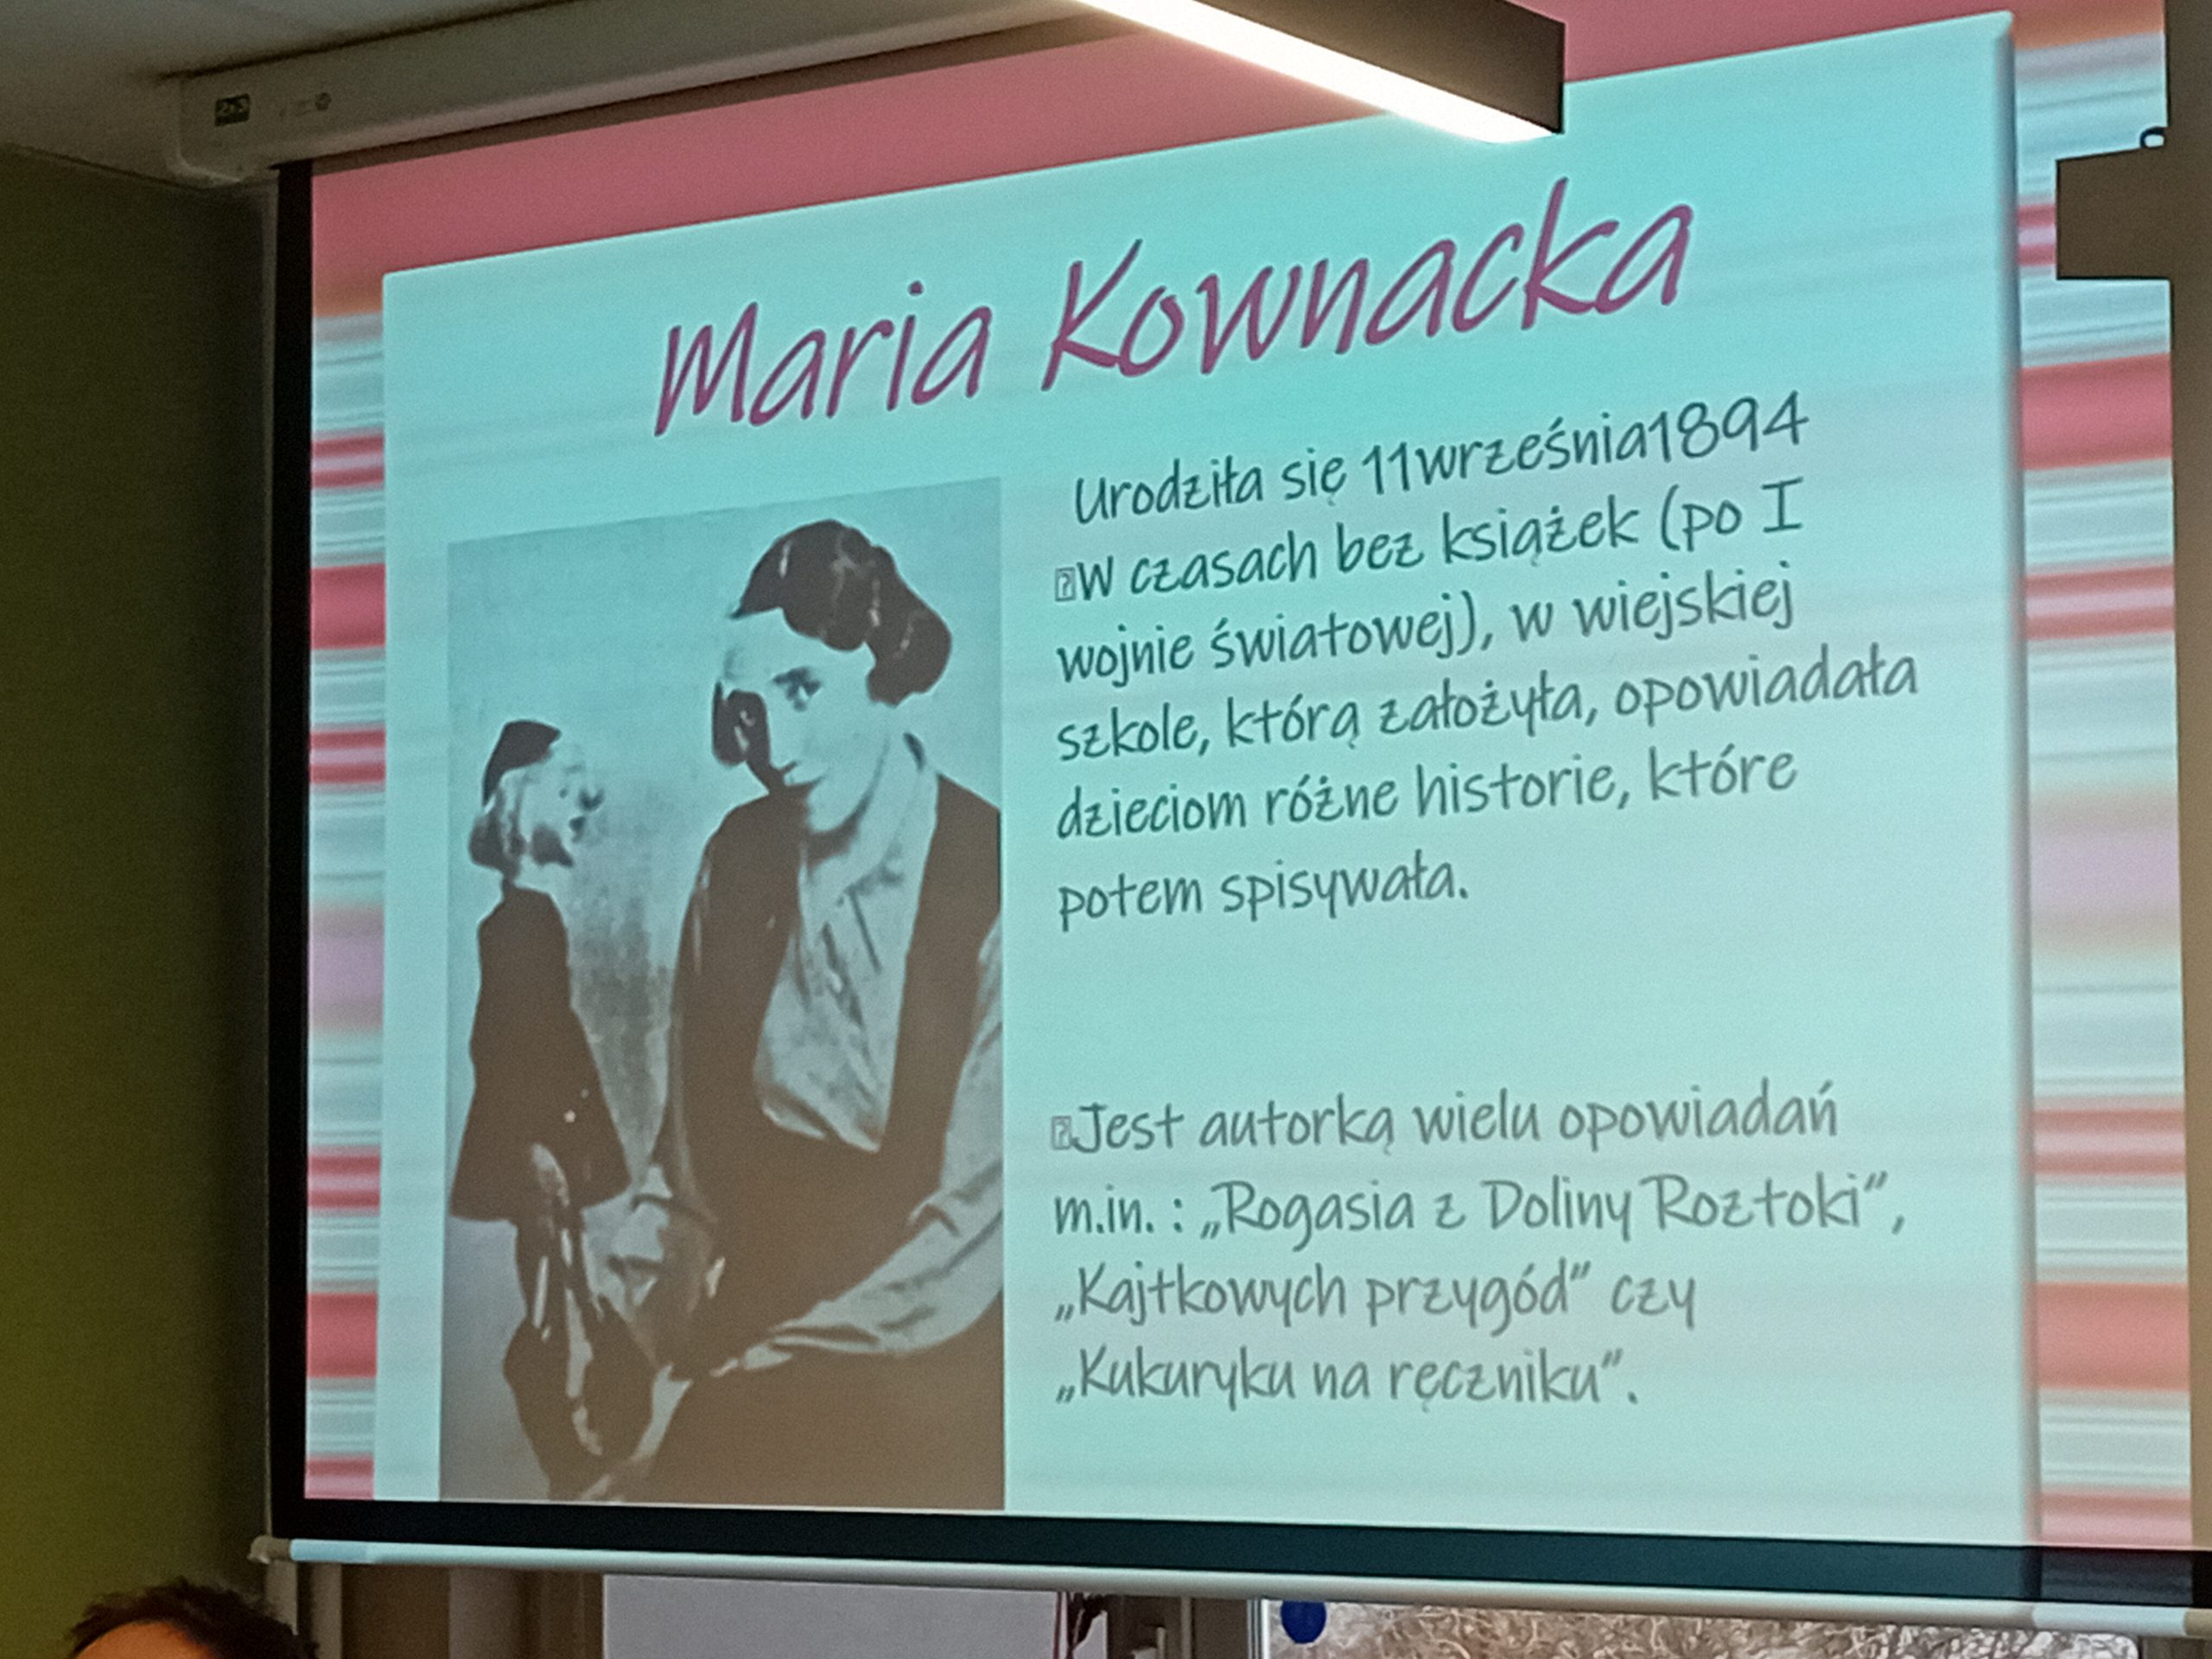 grafika wyróżniająca przedstawiająca ekran ze slajdem prezentacji o Marii Kownackiej. Na slajdzie widnieje czarno-białe zdjęcie autorki, która trzyma lalkę Plastusia. Obok zdjęcia widnieje krótki tekst o Kownackiej.